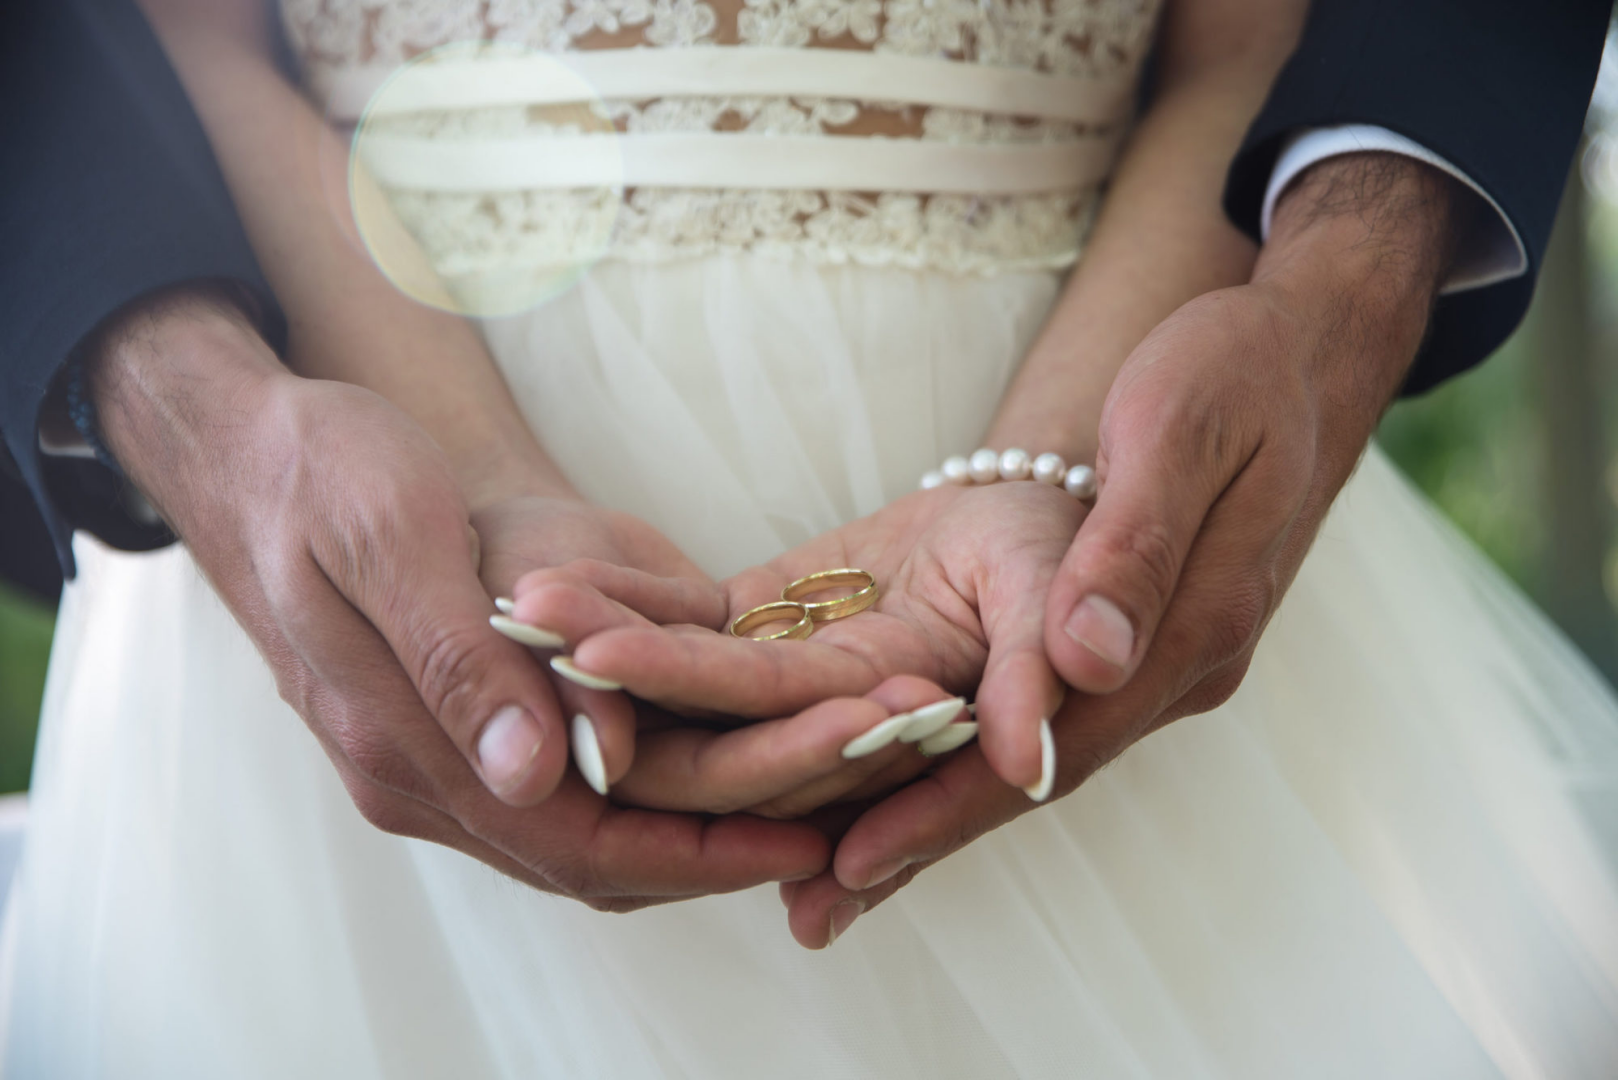 Брак. Обручальные кольца на руках жениха и невесты. Свадьба руки с кольцами. Фото обручальных колец на руках жениха и невесты. Брак семья загс условия вступления в брак